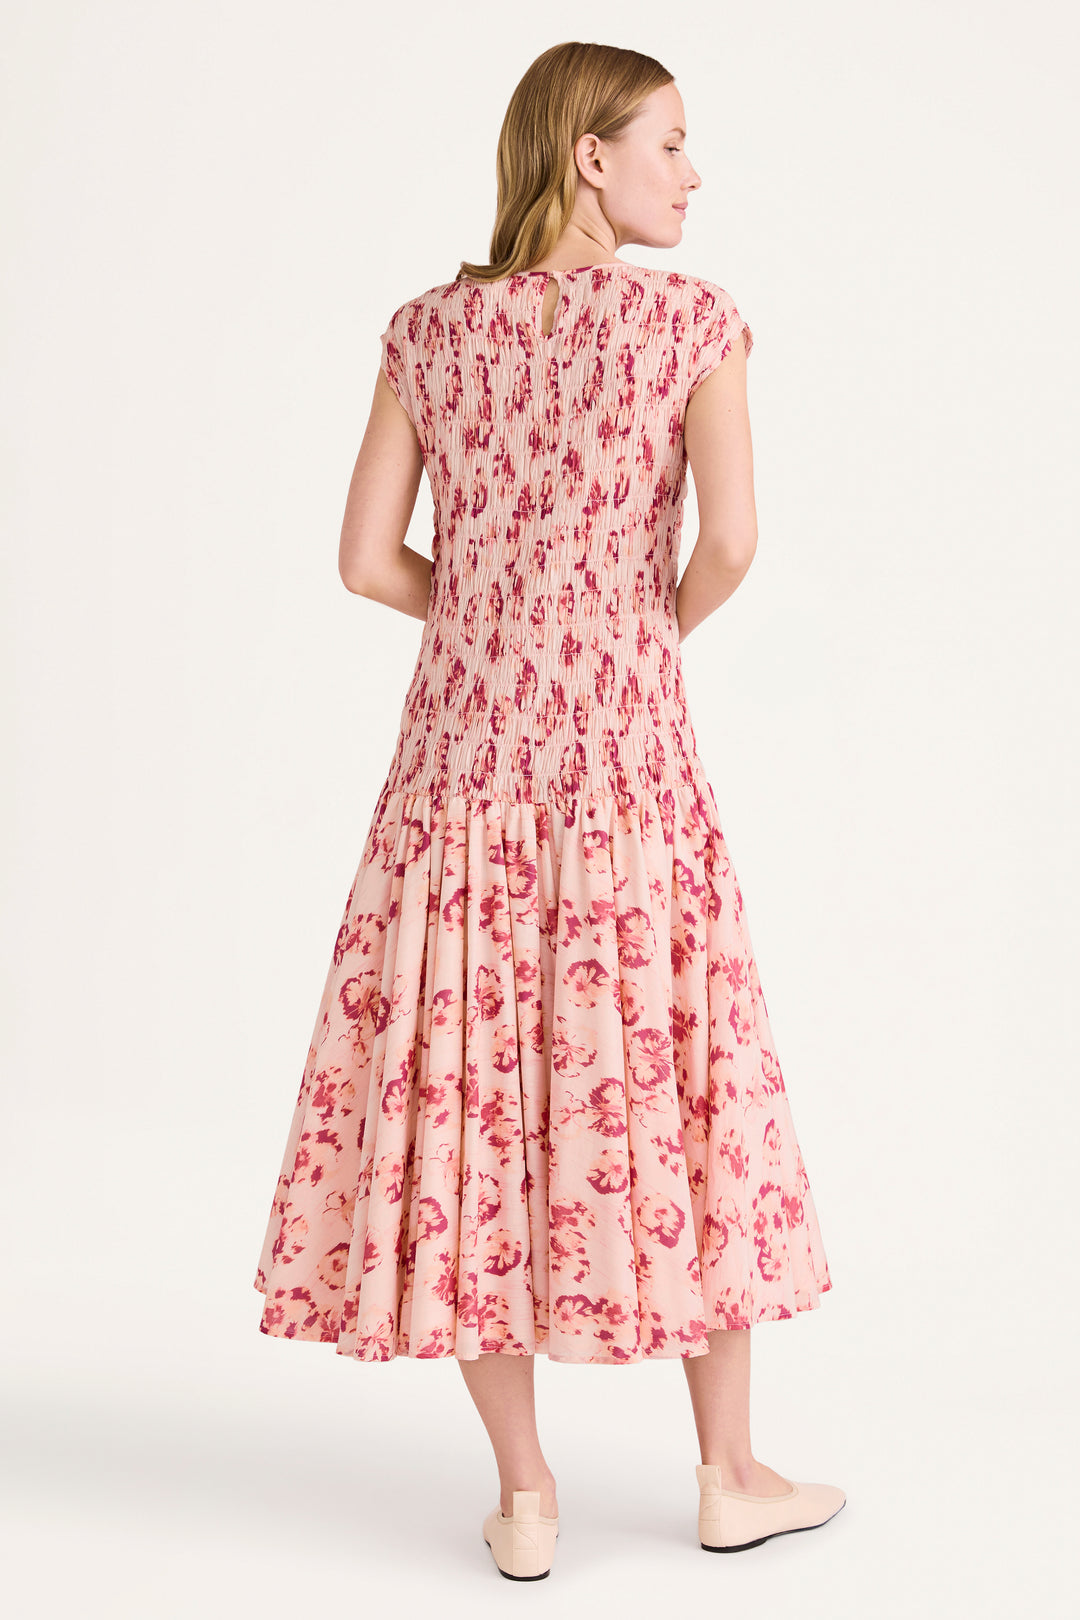 Merlette Stijl Print Dress